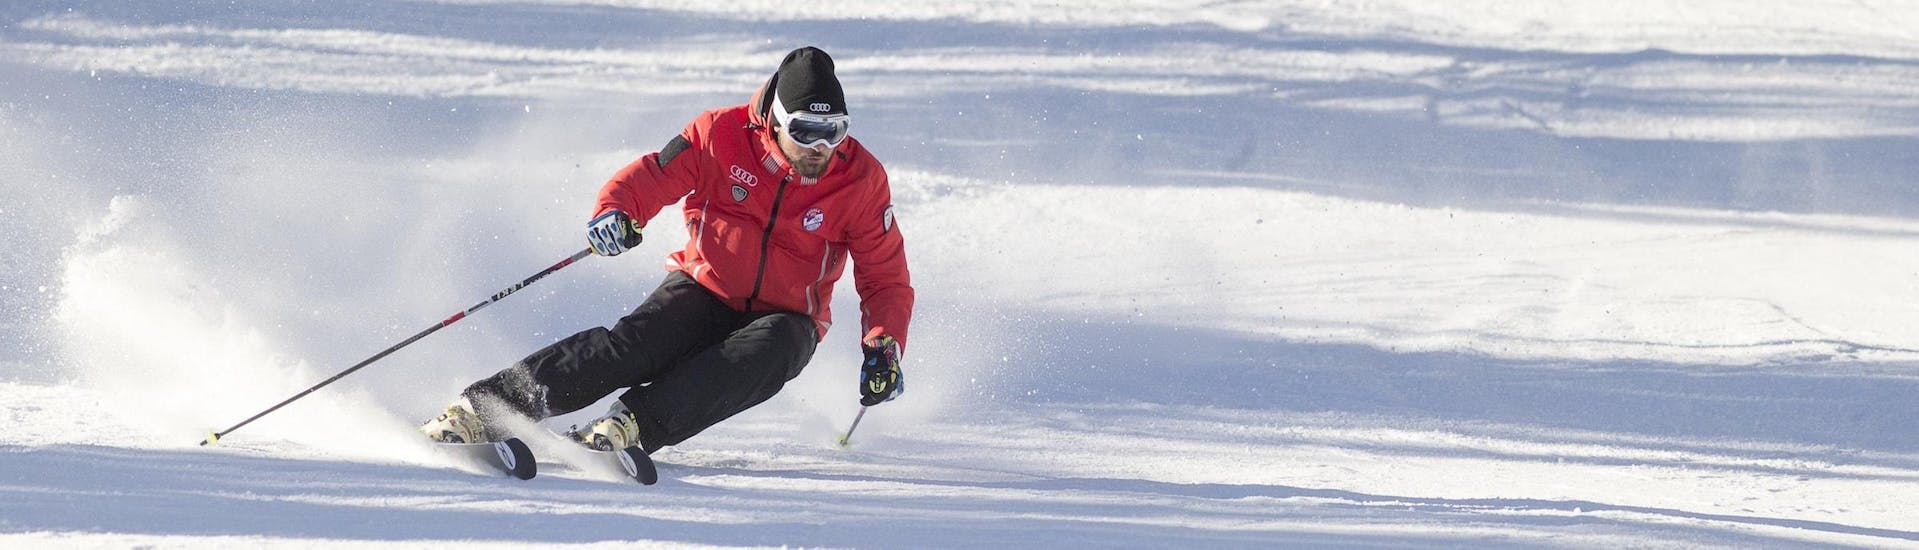 Un moniteur de ski de la Scuola Sci Cortina montre la bonne technique de ski pendant l'un des cours particuliers de ski pour adultes - tous niveaux dans la station de ski de Cortina d'Ampezzo.